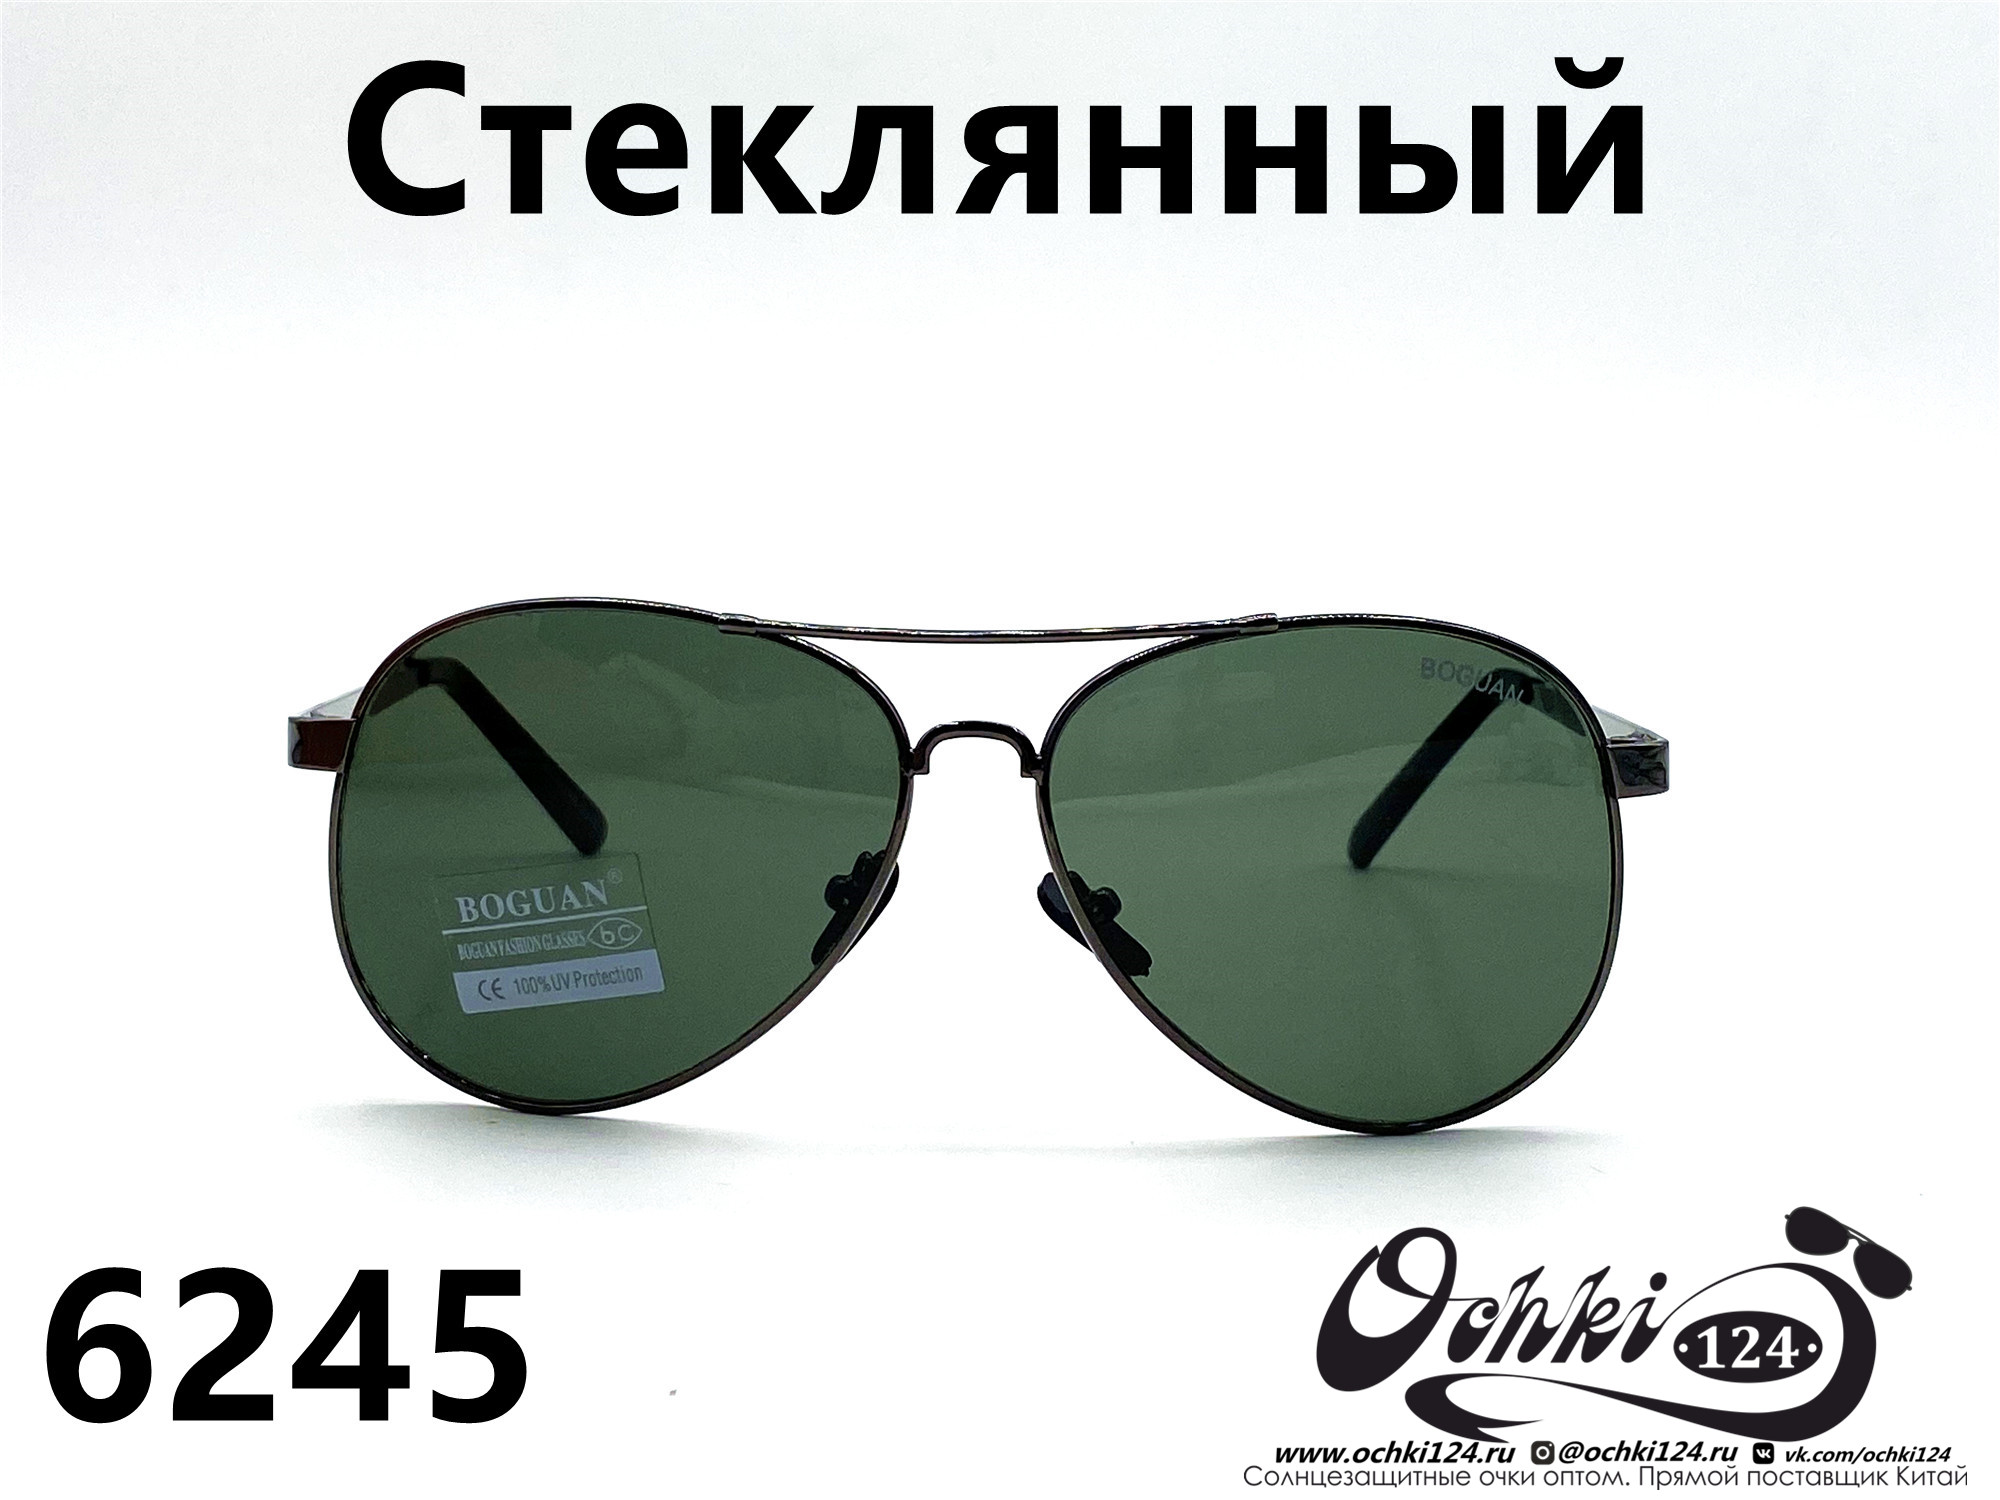  Солнцезащитные очки картинка 2022 Мужские Стеклянные Авиаторы Boguan 6245-2 